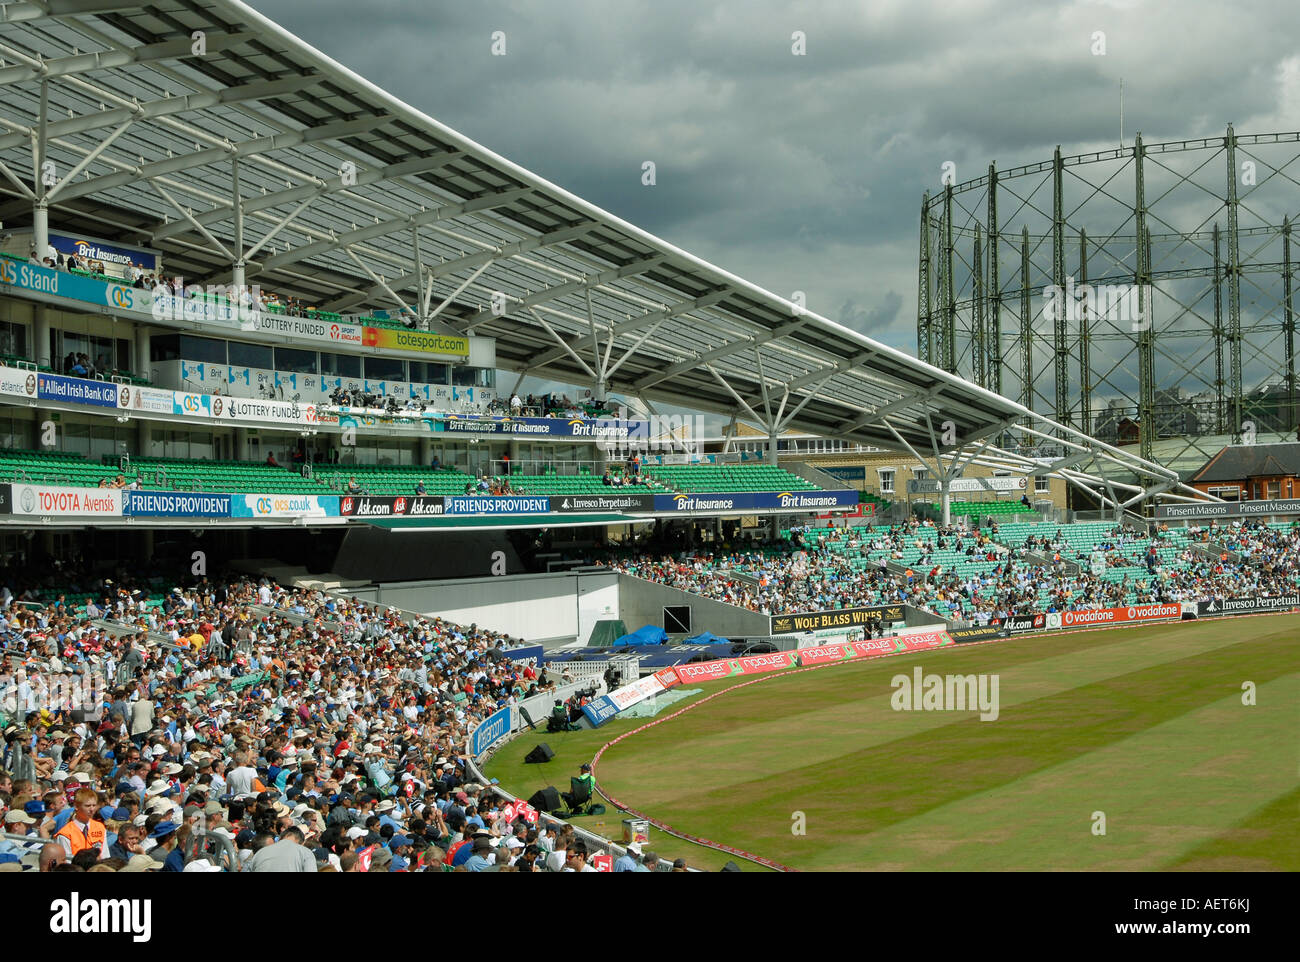 L'OCS stand à l'Oval Cricket Ground, London au cours d'un test-match Angleterre/Inde Banque D'Images